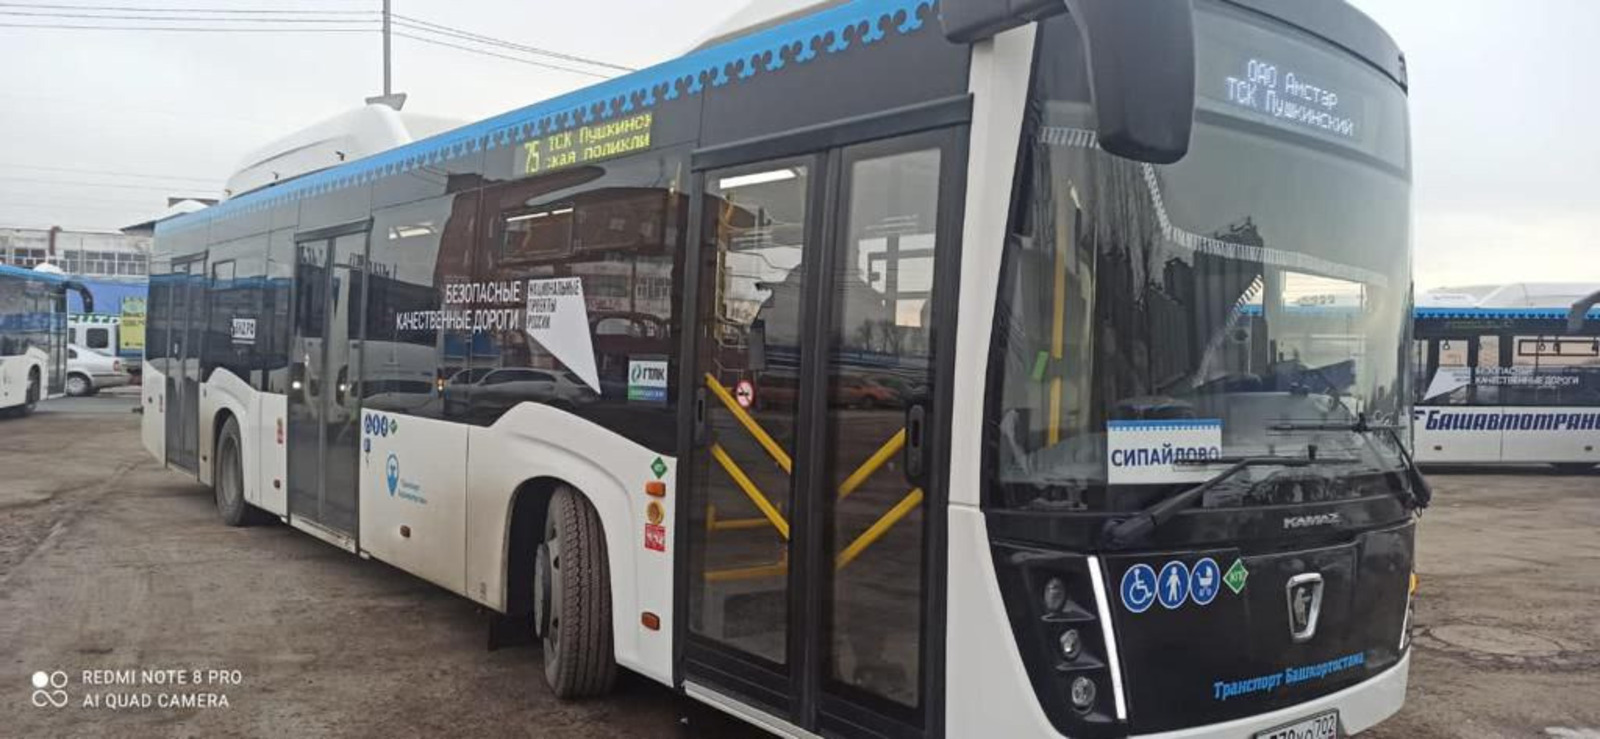 В Башкирии планируется закупить 50 новых больших автобусов